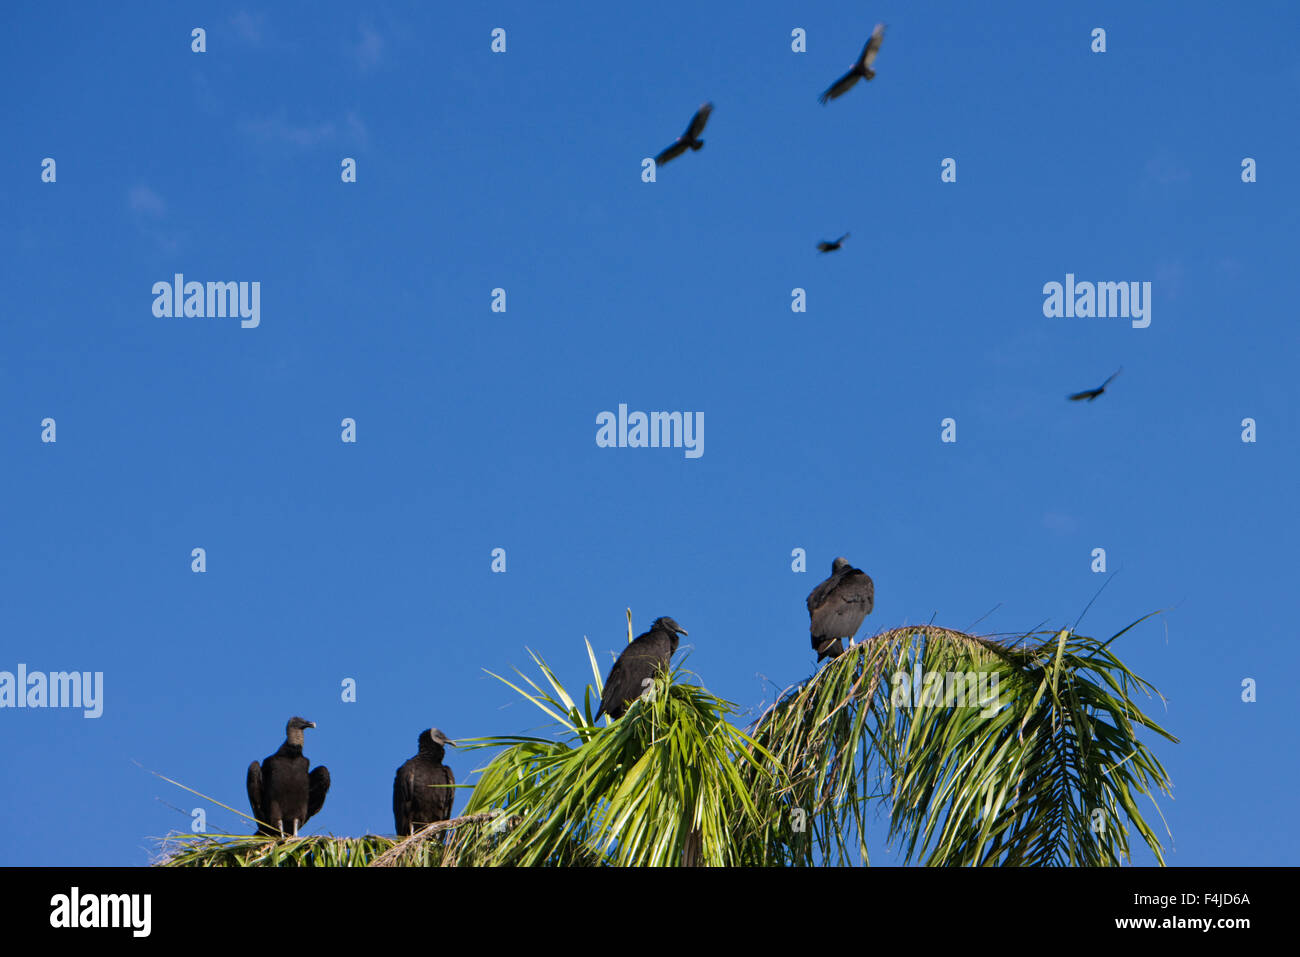 América American buitre negro pájaro de imágenes en color de aves rapaces del parque nacional de los Everglades de Florida grupo medio horizontal de personas Foto de stock